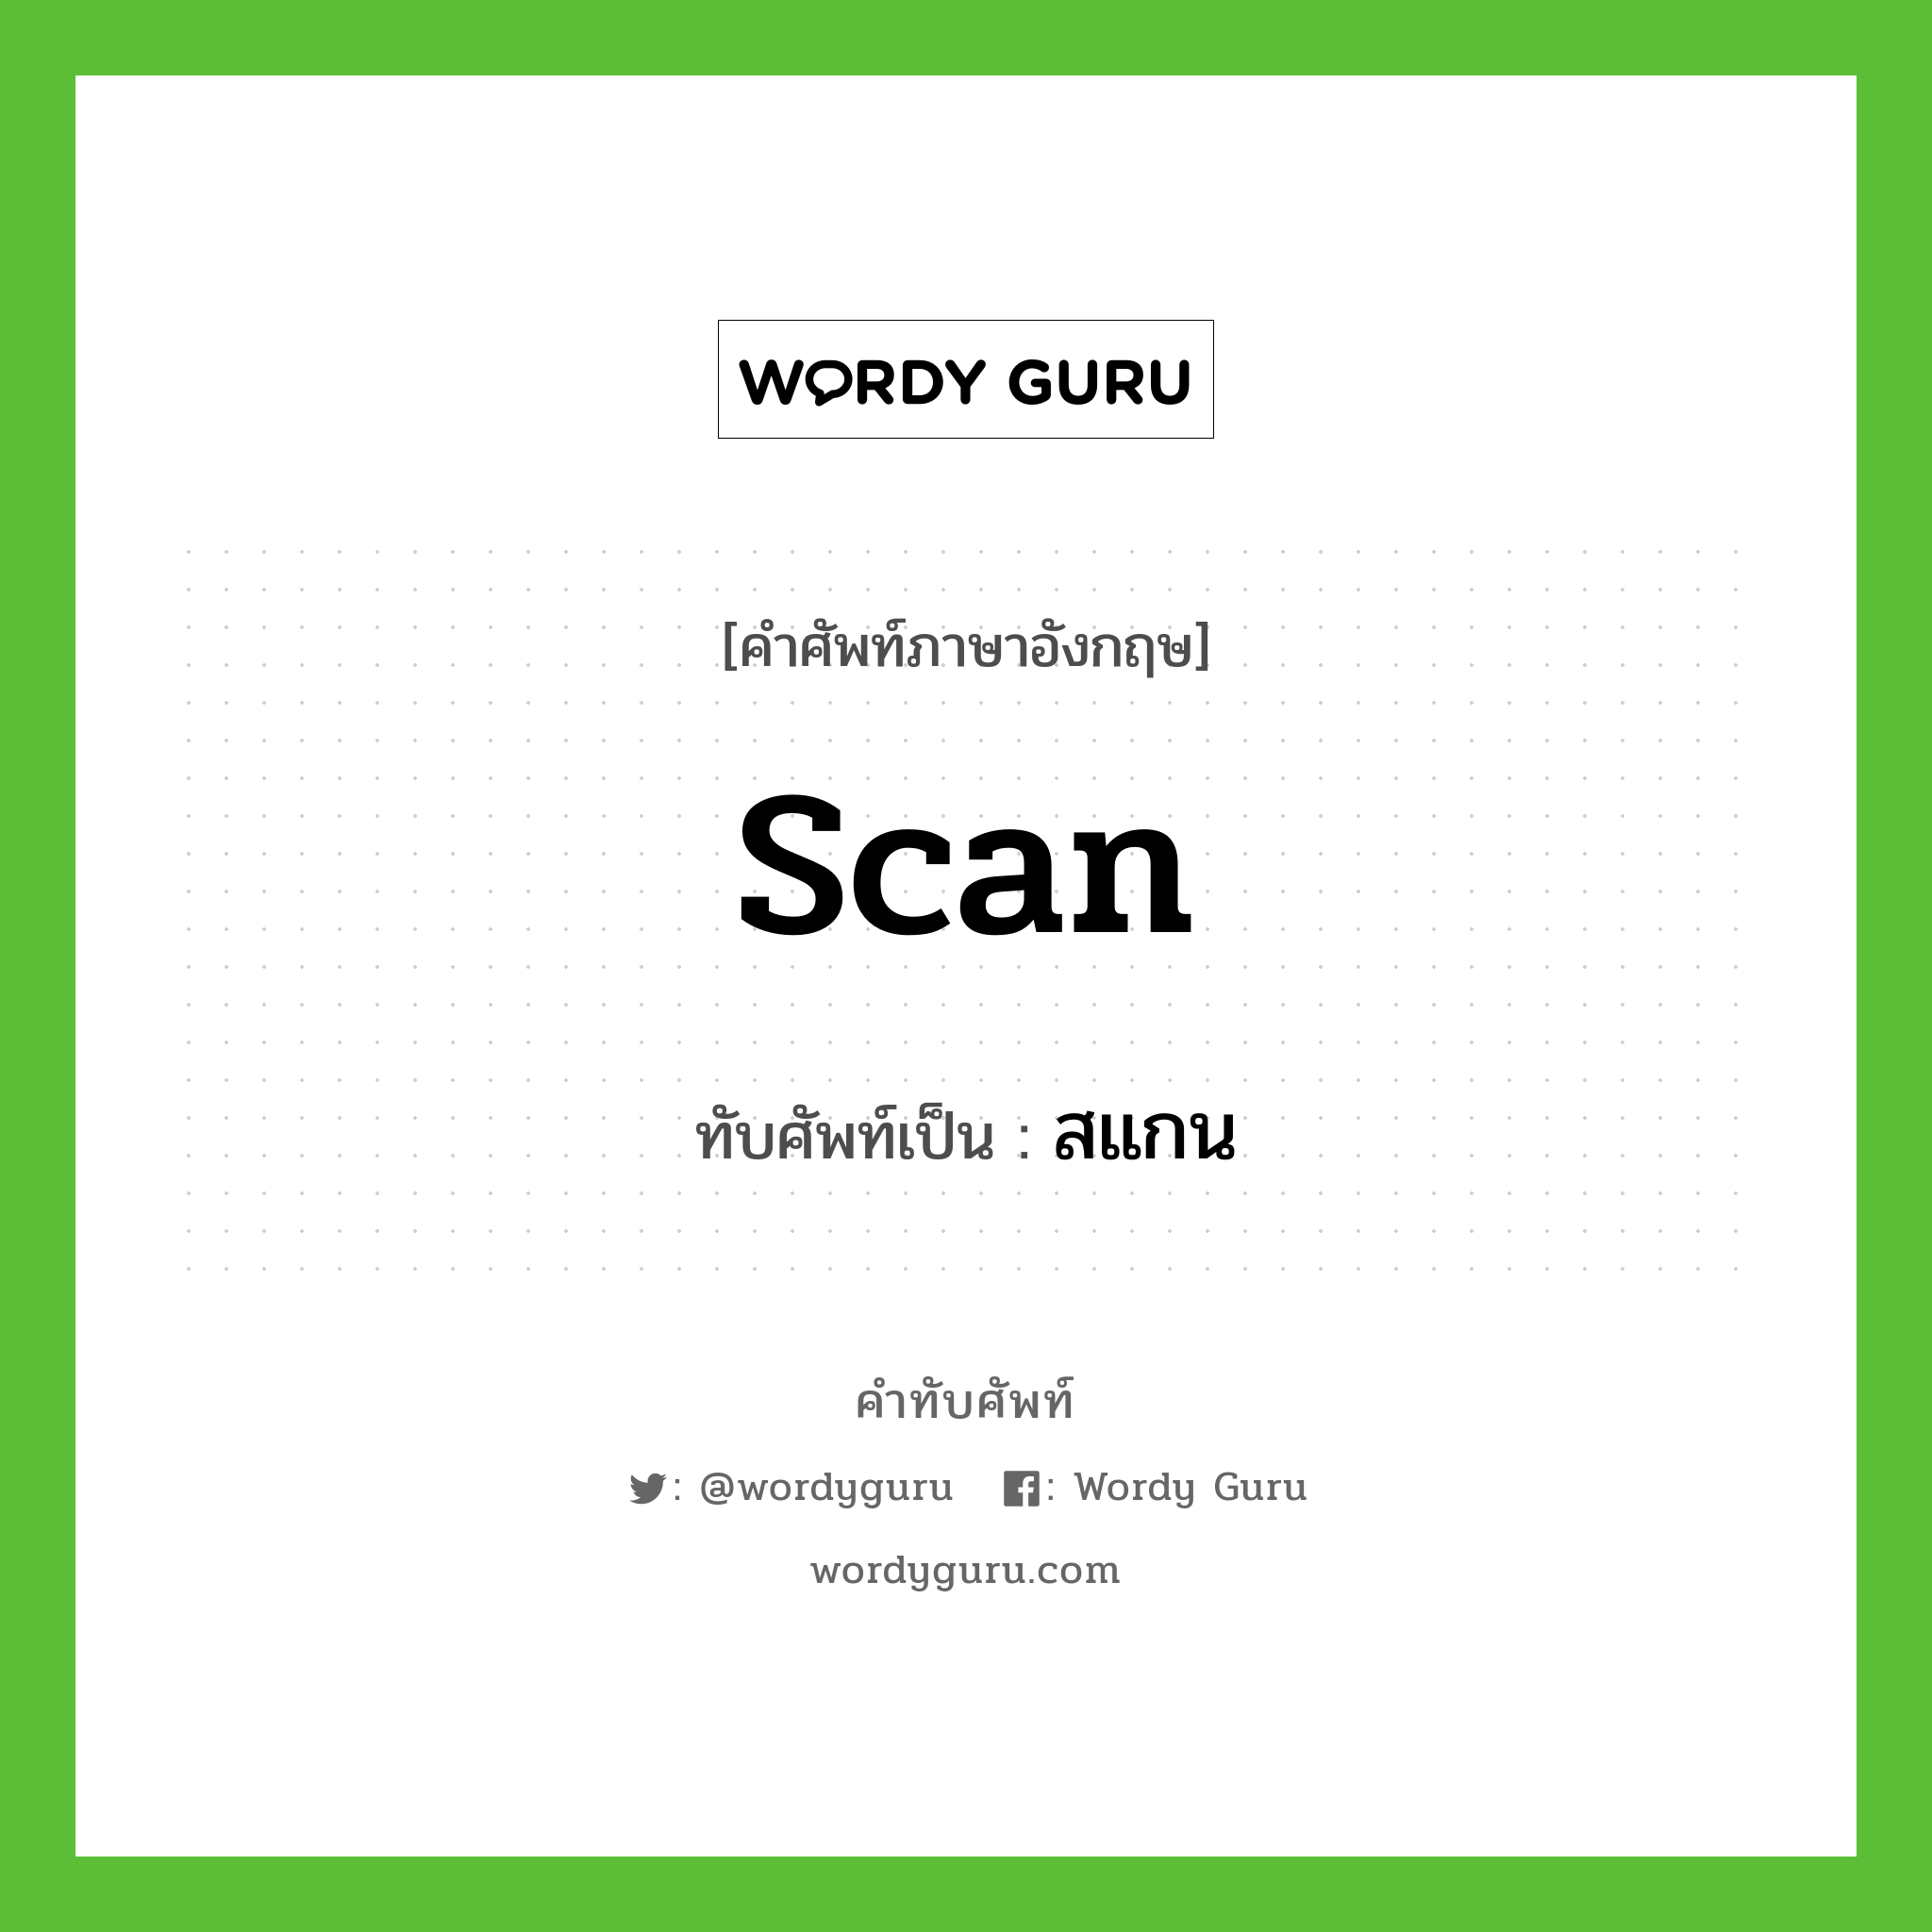 scan เขียนเป็นคำไทยว่าอะไร?, คำศัพท์ภาษาอังกฤษ scan ทับศัพท์เป็น สแกน